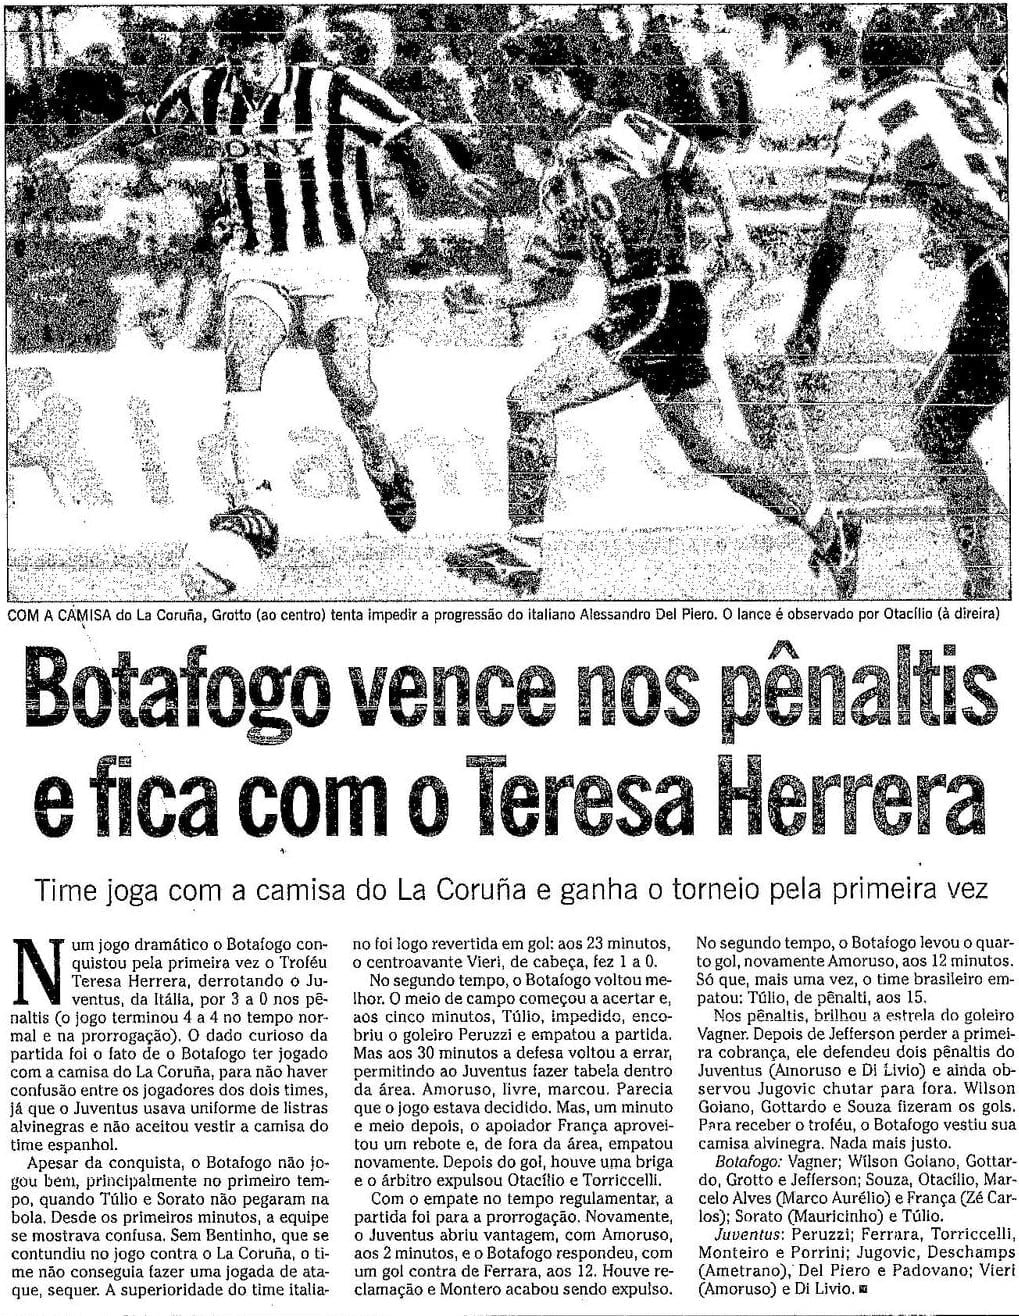 Botafogo-SP é voto vencido em definição de forma de classificação